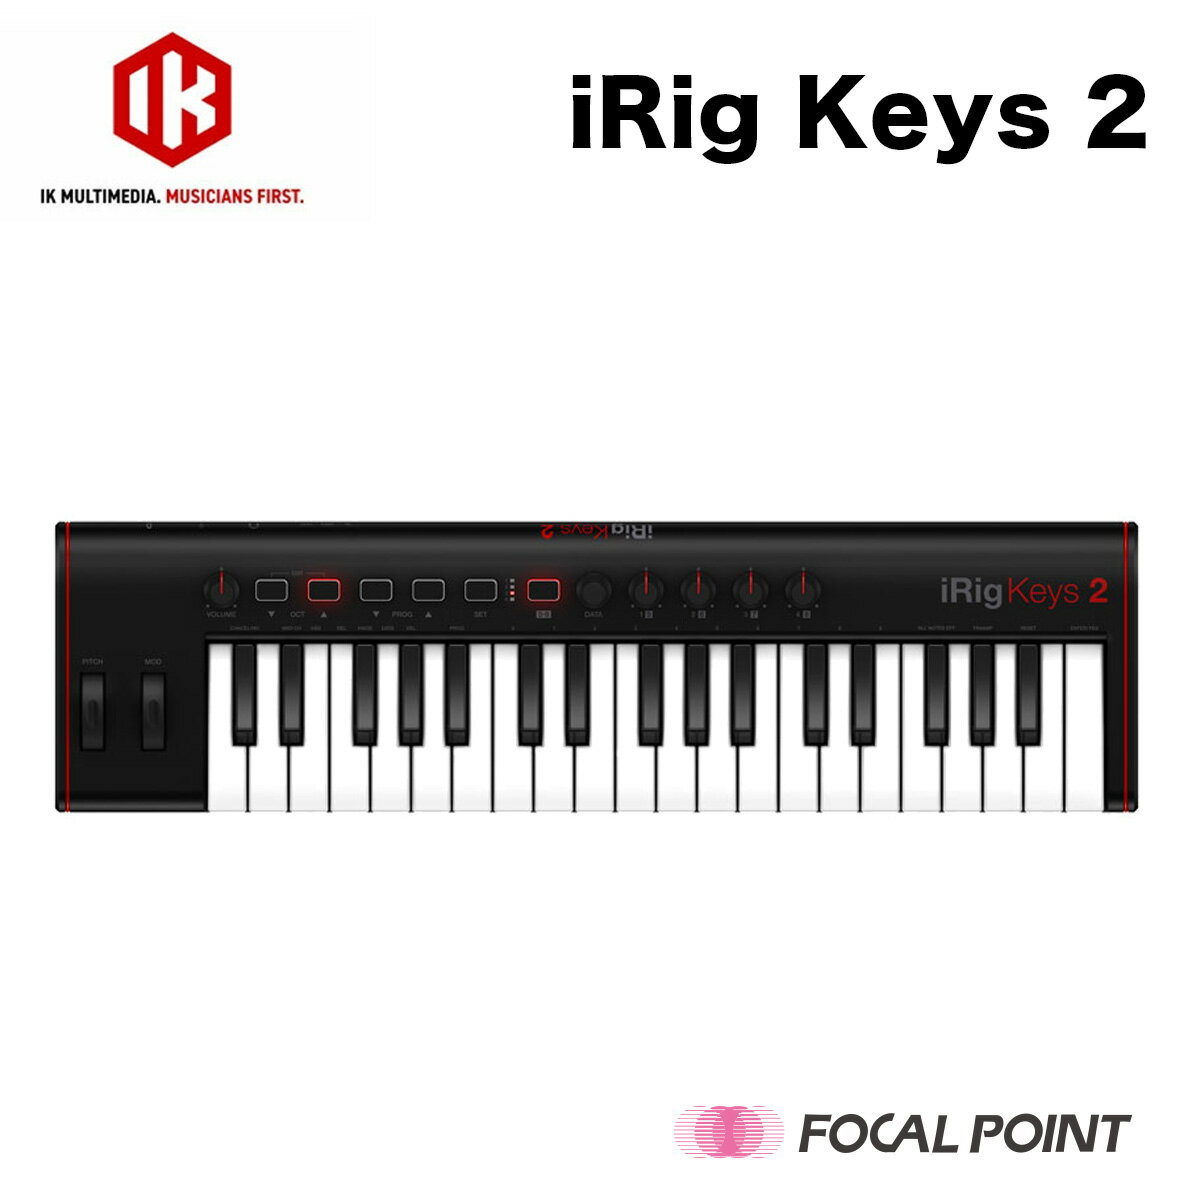 【IK Multimedia / アイケイマルチメディア】iRig Keys 2 (アイリグ キーズ ツー) iRig Keys 2は、ベロシティ対応の37鍵（3オクターブ）MIDIキーボード。Mac、PC、iPhone、iPad、Android、その他MIDI対応機器など、デバイスの制約なく接続できます。最新のモバイル・デバイスを利用するときに便利なオーディオ出力端子、MIDI入出力端子、複数の電源オプションを備えています。省スペース性と携帯性に優れた37鍵ミニサイズ鍵盤仕様「iRig Keys 2」と、定評のある37鍵フルサイズ鍵盤仕様「iRig Keys 2 Pro」の2種類。いつでもどこへでも気軽に持ち運べます。 さらに便利な次世代MIDIキーボードへ進化したiRig Keys 2 iRig Keys 2は高い人気を得た初代iRig Keysシリーズの後継機種にあたる次世代型モバイルMIDIキーボード。持ち運べるコンパクト性など、良いところはそのままに出力端子の追加など、さらに進化しました。 ユニバーサルMIDIキーボード iRig Keys 2には、MIDI入出力端子が装備されてるため、MIDI端子を装備したUNO Synth、UNO Drumのようなハードウェア・シンセサイザーであったとしても、Mac、PCを介さずに直接演奏できます。コンピューターやモバイル・デバイスに接続すれば、MIDIインターフェースとしても機能しますので、ハードウェアを含めたセットアップをよりコンパクトにまとめることが可能です。Mac、PCやiOS端末などのモバイル・デバイスからの電源供給のほか、USB接続のモバイル・バッテリーでも動作するため、さまざまな場所や環境での演奏が可能です。 オーディオ出力端子も搭載 ヘッドホン端子が搭載されているので、ヘッドフォン端子を装備しないiOSやAndroidデバイス（要別売ケーブル）を接続した場合、その出力音声をiRig Keys 2のヘッドフォン端子からモニタリングできます。 また、現在Mac、PCではソフトウェア・ベースの制作環境が主流ですが、iRig Keys 2を使用すれば、オーディオ・インターフェイスなどを別途用意せずに、iRig Keys 2から出力音声のモニタリングが可能です。非常にコンパクトでモバイル向けの制作環境も構築できます。自宅のシステムの一部として、またモバイル用のシステムの中心として、状況に応じて使い分けることができます。 カスタマイズやコントロールも、保存して呼び出し可能 モジュレーション・ホイール、ピッチ・ベンド・ホイール、音量調節ノブ、オクターブおよびプログラムup / downボタン、SETおよびALTボタン、データ・プッシュ・エンコーダーなど、数多くの便利なコントロールが搭載されています。さらに任意のパラメーターをアサインして操作できる、4つのコントロール・ノブも搭載しており、ページを切り替えることで計8つのパラメーターのコントロールが可能です。エディット・モードでは、キーのトランスポーズやベロシティ感度の設定、MIDIチャンネルの変更やノブのカスタマイズなど、数多くの設定が保存でき、SETボタンでいつでも呼び出すことができます。 アプリケーションで、さらに拡がる可能性 iRig Keys 2には、IK Multimediaが誇る業界標準のMac/PC用サウンド＆グルーヴ・ワークステーション、SampleTank 4 SEがバンドルされています。SampleTank 4本体のフル機能に加え、厳選された2,000種類のインストゥルメント、合計30 GB以上のライブラリーを収録しています。モバイル・デバイス用には、無償アプリのSampleTank FREE for iOS、iGrand Piano FREE for iOS＆Android、iLectric Piano FREE for Androidを用意しています（製品登録でボーナス・サウンドが解放されます）。その他にもiPhone、iPad、Android、Mac/PCで動作するさまざまなアプリケーションと組み合わせて使用できますので、演奏の練習、作曲、ライブ・パフォーマンスなど、組み合わせ方はあなた次第でいくらでも広がります。 モバイル用途もできる可能性は無限大 iRig Keys 2は他の同クラスの37鍵キーボードより省スペース設計。教室で練習したり、ホテルで作曲を行ったり、このキーボードから得られるインスピレーションの可能性は無限大です。 目的に応じたサイズを選ぼう iRig Keys 2は省スペース性と携帯性に優れた37鍵ミニサイズ鍵盤仕様、iRig Keys 2 Proは、iRig Keys 2のフルサイズ鍵盤バージョンです。どちらも同様の充実した機能と省スペース性でありながら、定評のある程よく重みのある鍵盤により、本格的な演奏ができます。 【特徴】 ・ユニバーサルMIDIキーボード。 ・オーディオ出力端子も搭載。 ・カスタマイズやコントロールの保存機能搭載 ・充実した付属ソフトウェアで可能性がさらに拡がる ・モバイル用途もできる可能性は無限大。 【製品サイズ】 本体サイズ：約518mm（W）×139mm（H）×40（D）mm 本体重量：約870g パッケージサイズ：約600mm（W）×25mm（H）×90（D）mm パッケージ重量：約1530g 【対応モデル】 ・iOS (iPhone/iPod/iPad)　iOS 6 以降 ・Android（別売りのmicro-USB to OTGケーブル、またはmicro-USB to USB-Cケーブルが必要) ・Mac（Mac OS X 10.6 以降）空きUSBポートがあること。 ・Windows 10 WASAPI フルサポート、または Windows 7、8（ASIO4ALLドライバー必須）、空きUSBポートがあること。 【同梱品】 Lightning to micro-USB ケーブル（60 cm） USB-A to micro-USB ケーブル（60 cm） 2.5 mm TRS male to MIDI female アダプター（10 cm） ※USB-C to micro-USB ケーブル、および micro-USB-OTG to micro-USB ケーブルは別売です。 【商品コード / カラー / JANコード】 IKM-OT-000083 / ブラック / 4512223688768 【保証期間】 2年間 （製品購入後15日以内にIK Multimediaアカウントにて要ユーザー登録） 【注意】 ※製品にはオンライン・ユーザマニュアルにアクセス可能なQRコードを記したカード、シリアルナンバーカードが同梱されています。 冊子類による取扱説明書は含まれておりません。付属のQRコードよりダウンロードしてご確認ください。（2021年9月現在） ※お客様のPCモニターによって、画像の色が実物と異なって見える場合がございます。